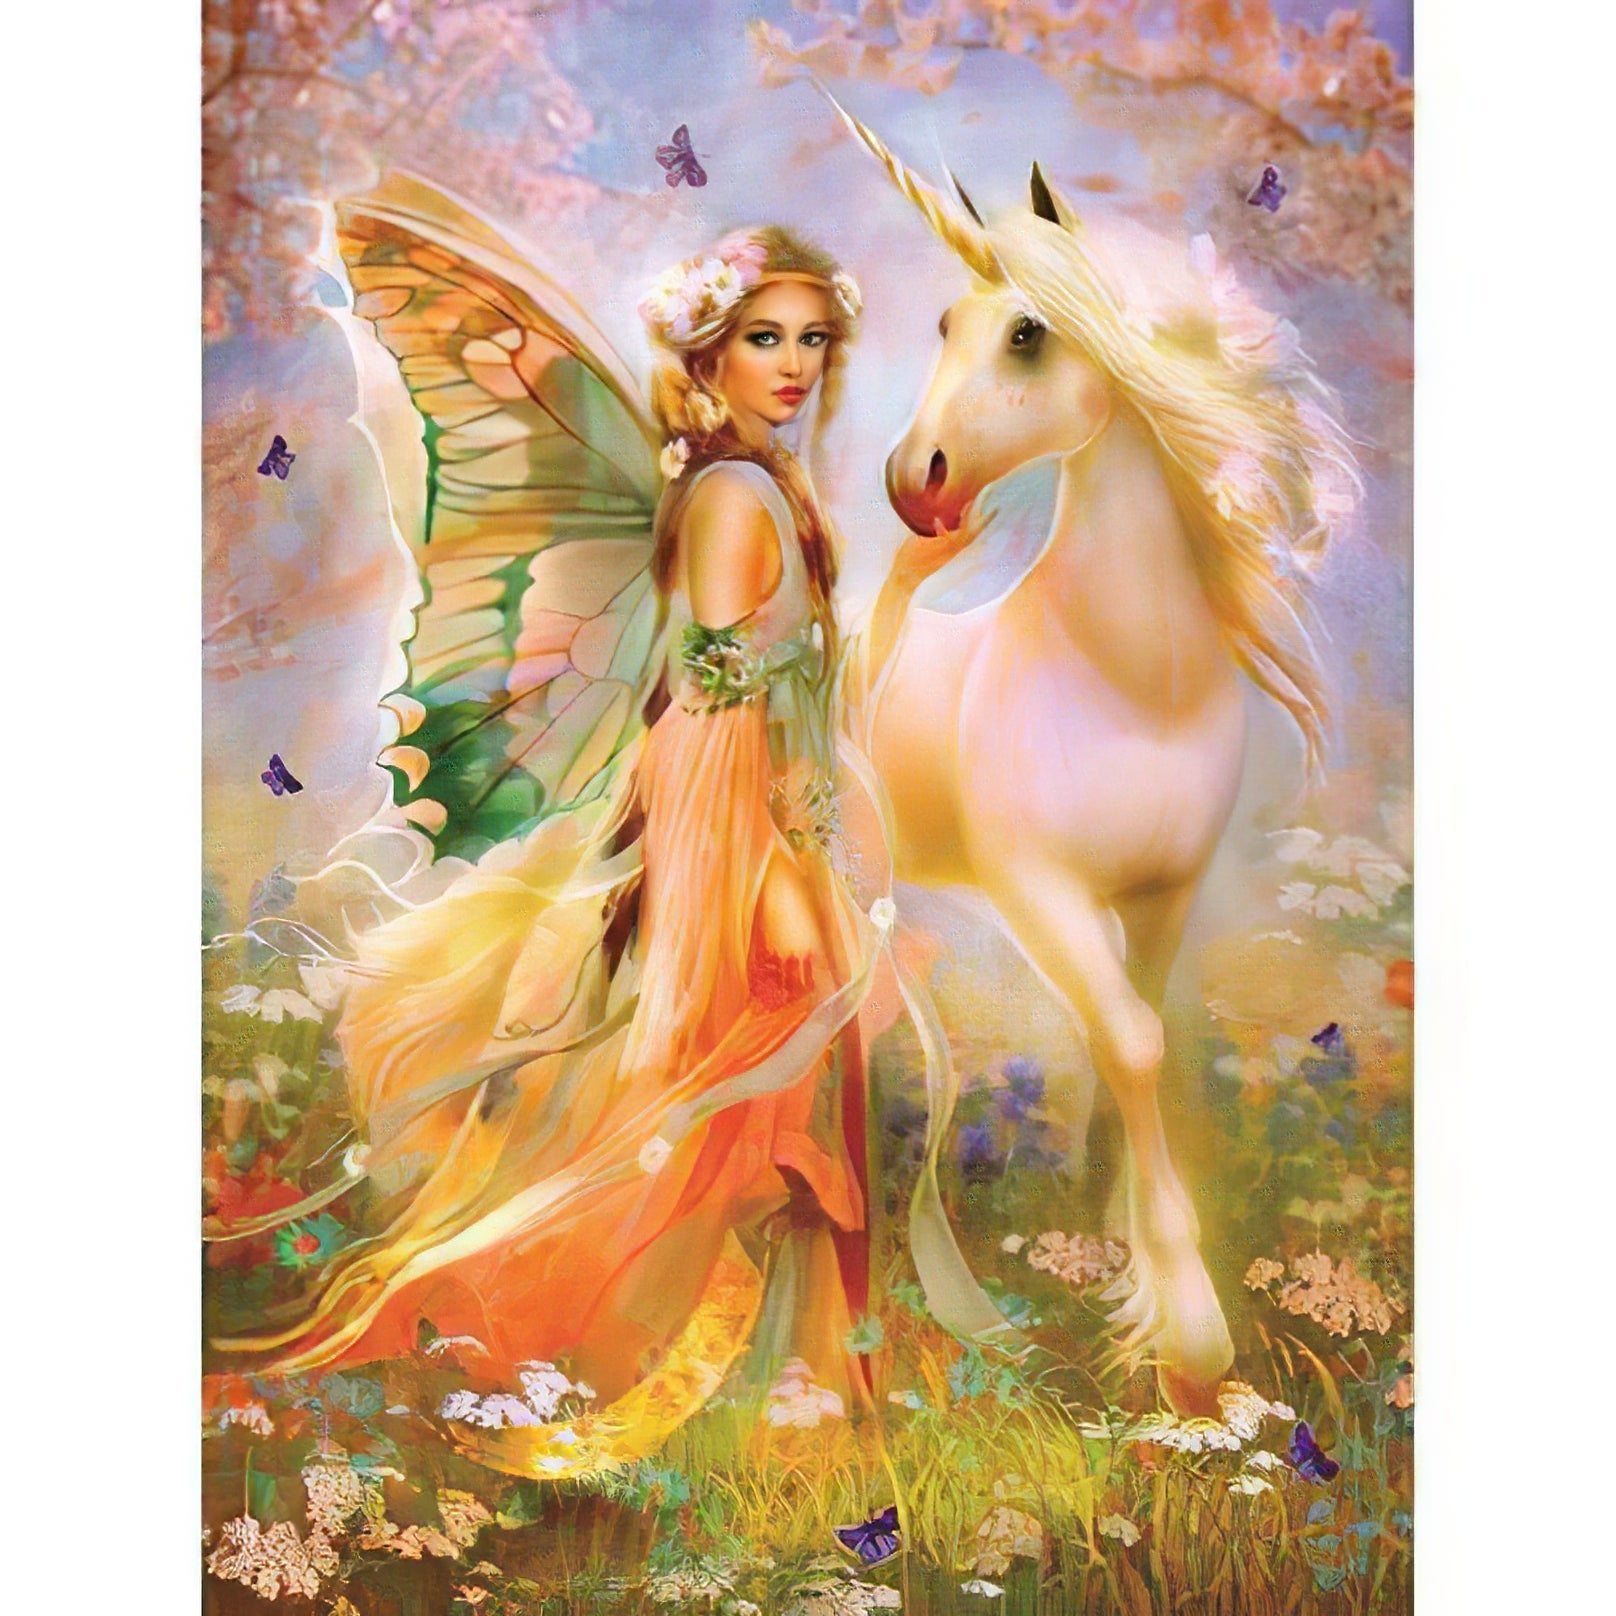 Una pintura de diamantes llamado 'Ángel y unicornio' - Meencantalapinturadediamantes